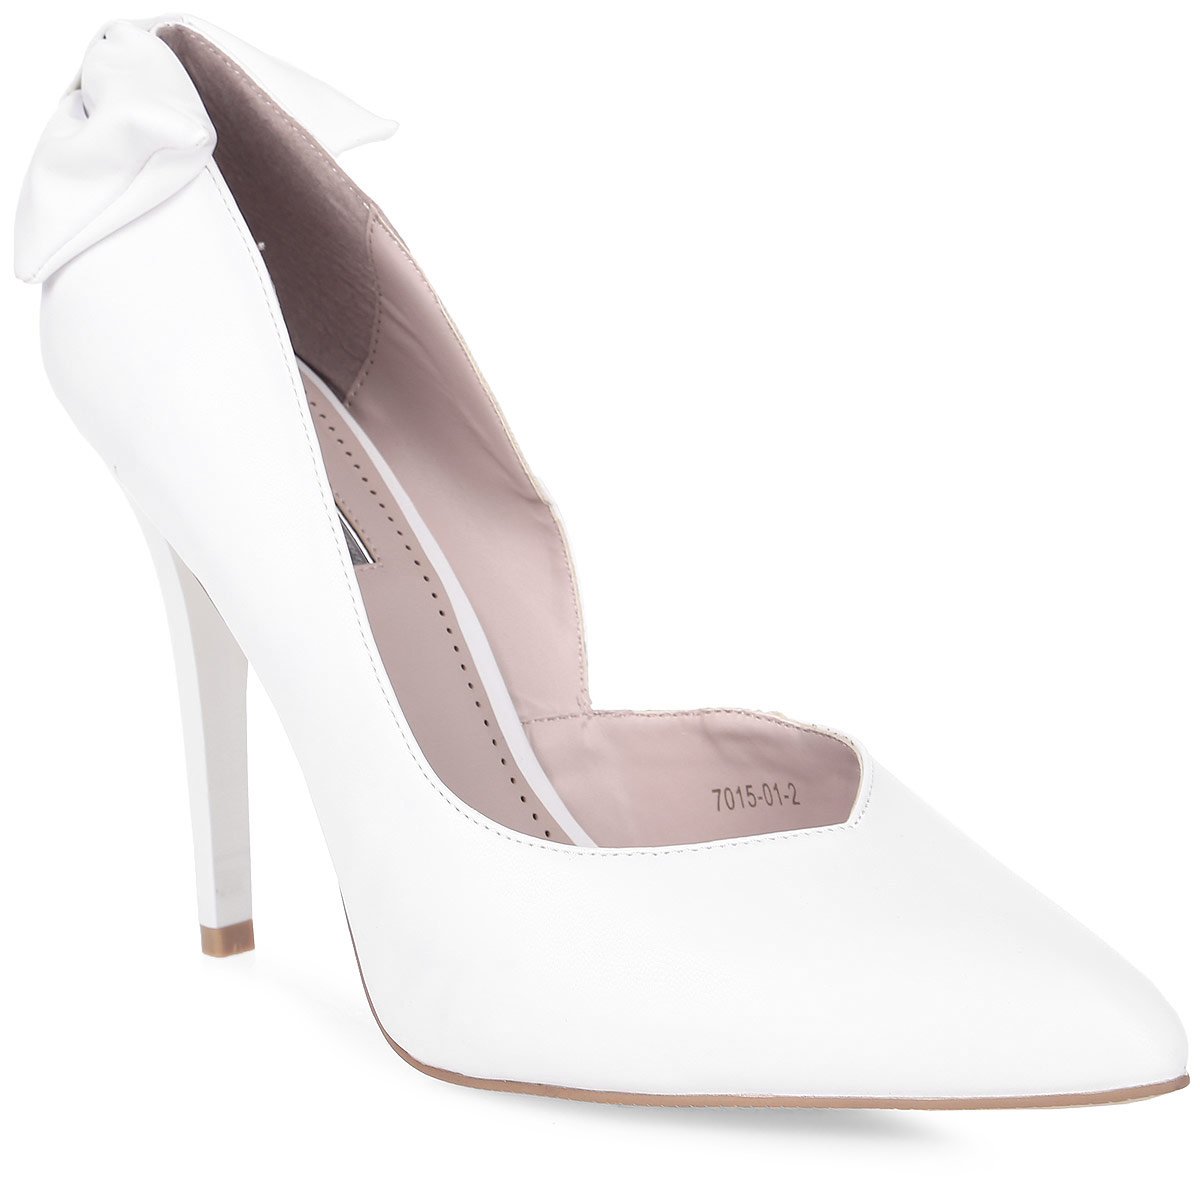 Туфли женские Inario, цвет: белый. 7015-01-2. Размер 38